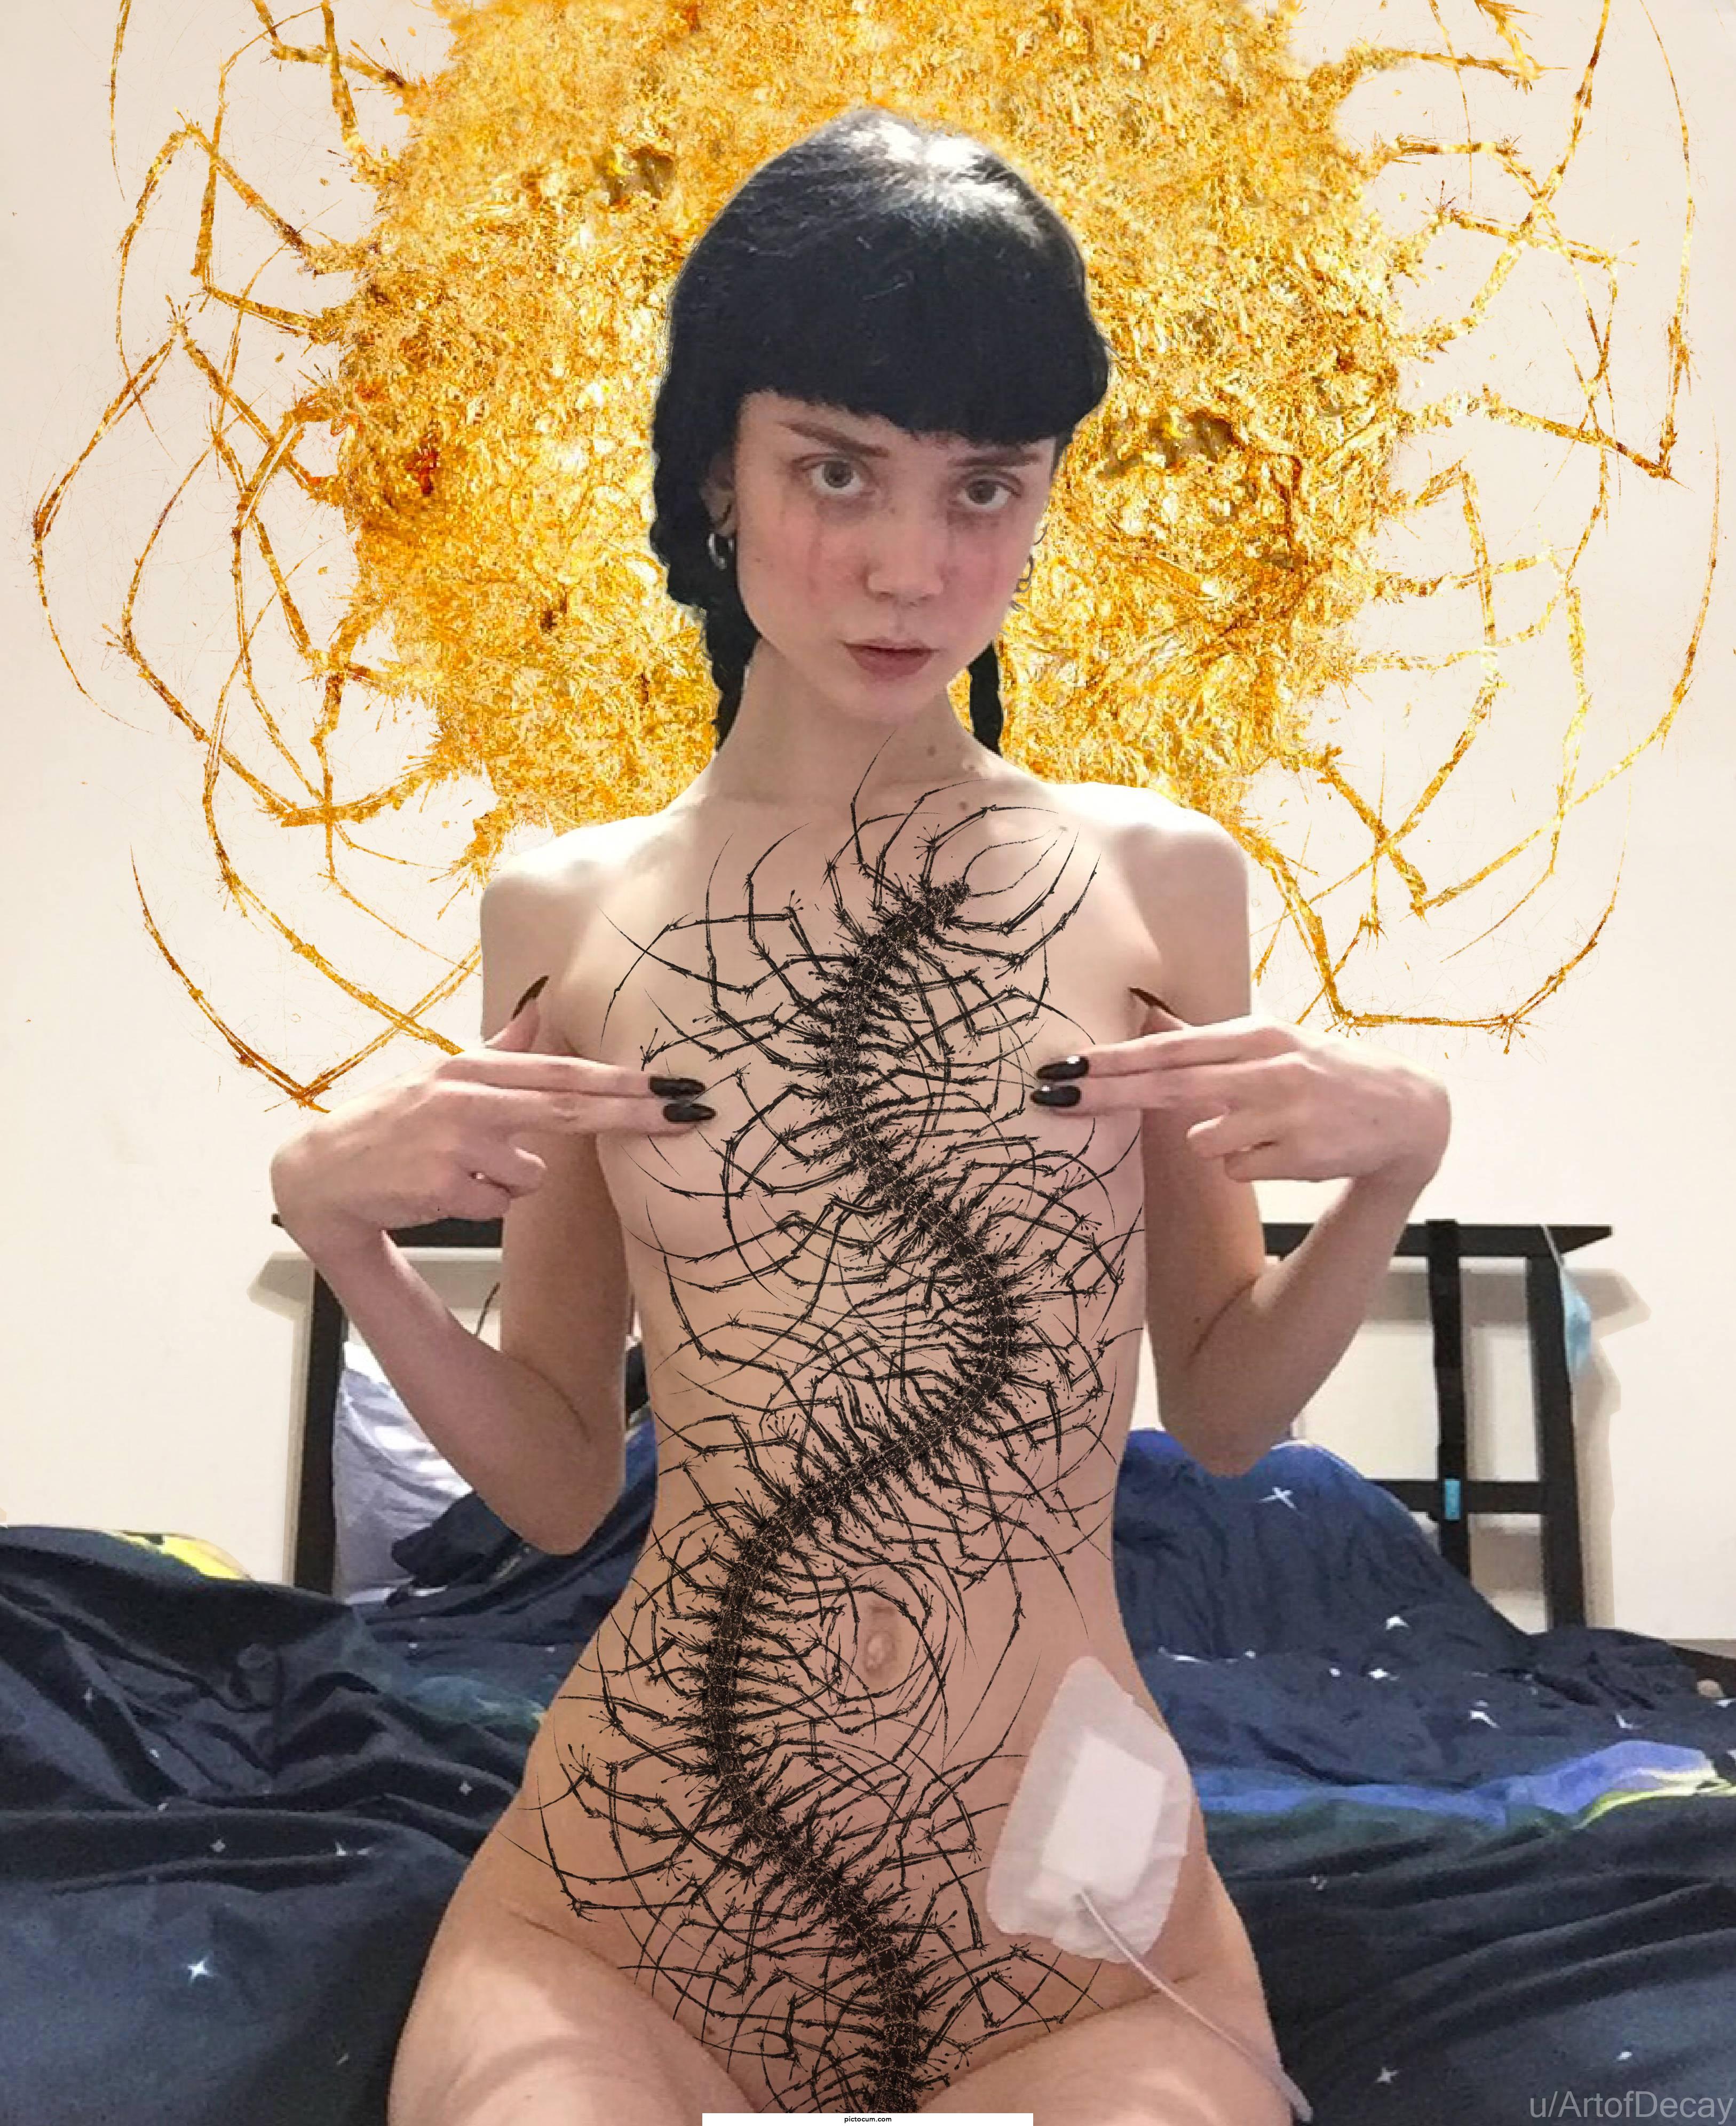 Centipede godness Dobrayalubov, digital art by ArtofDecay